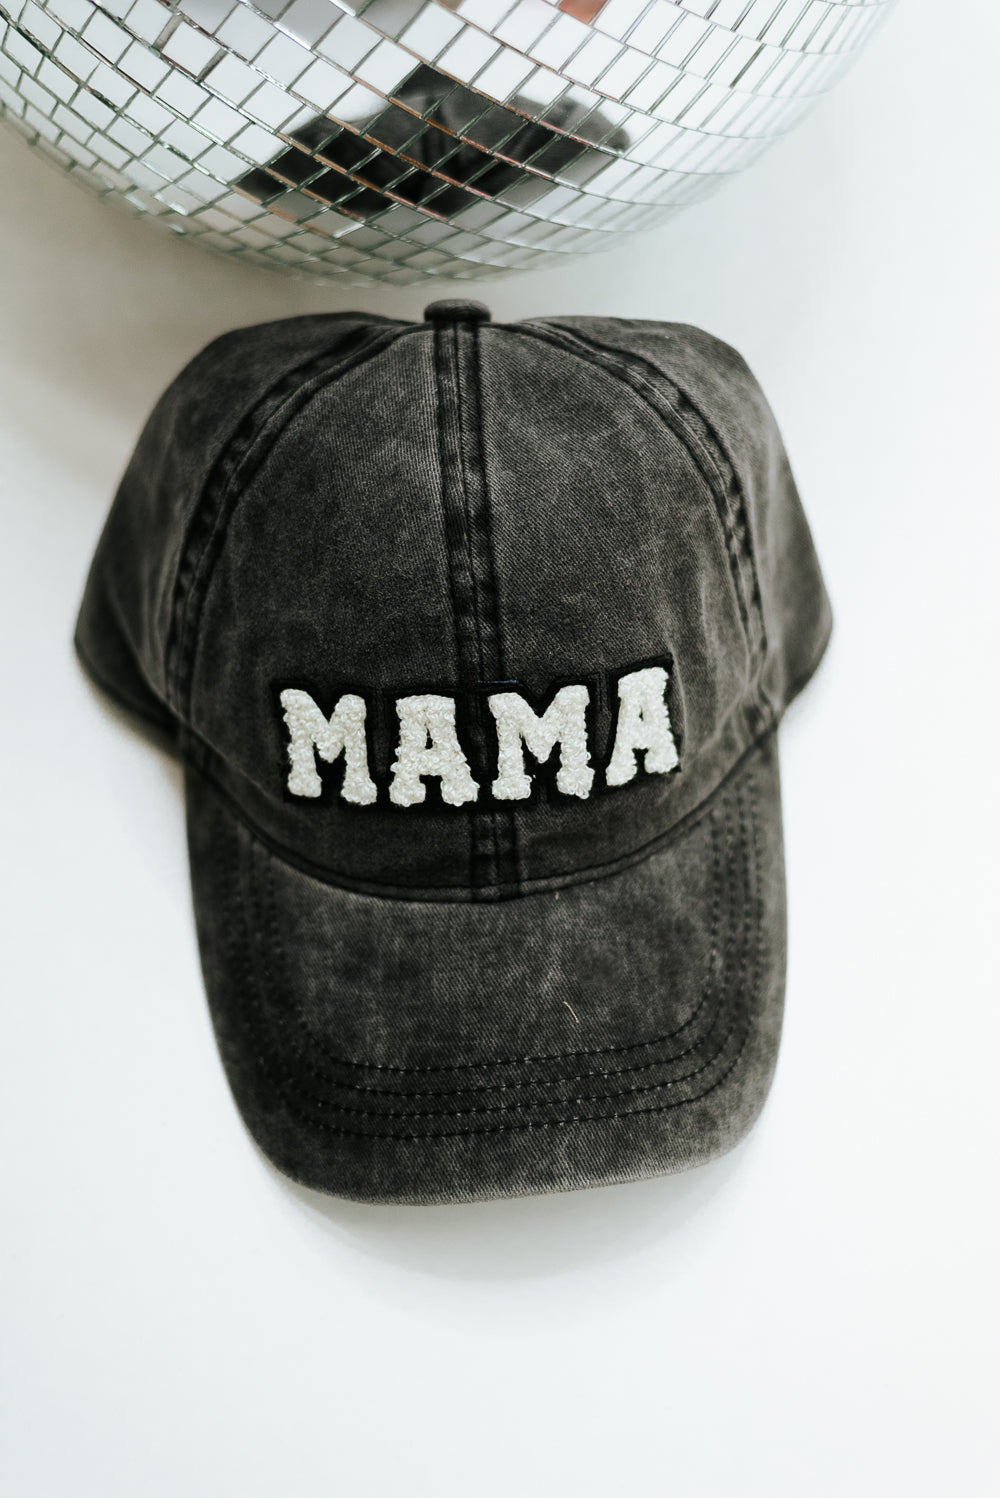 Mama Ball Cap, Black